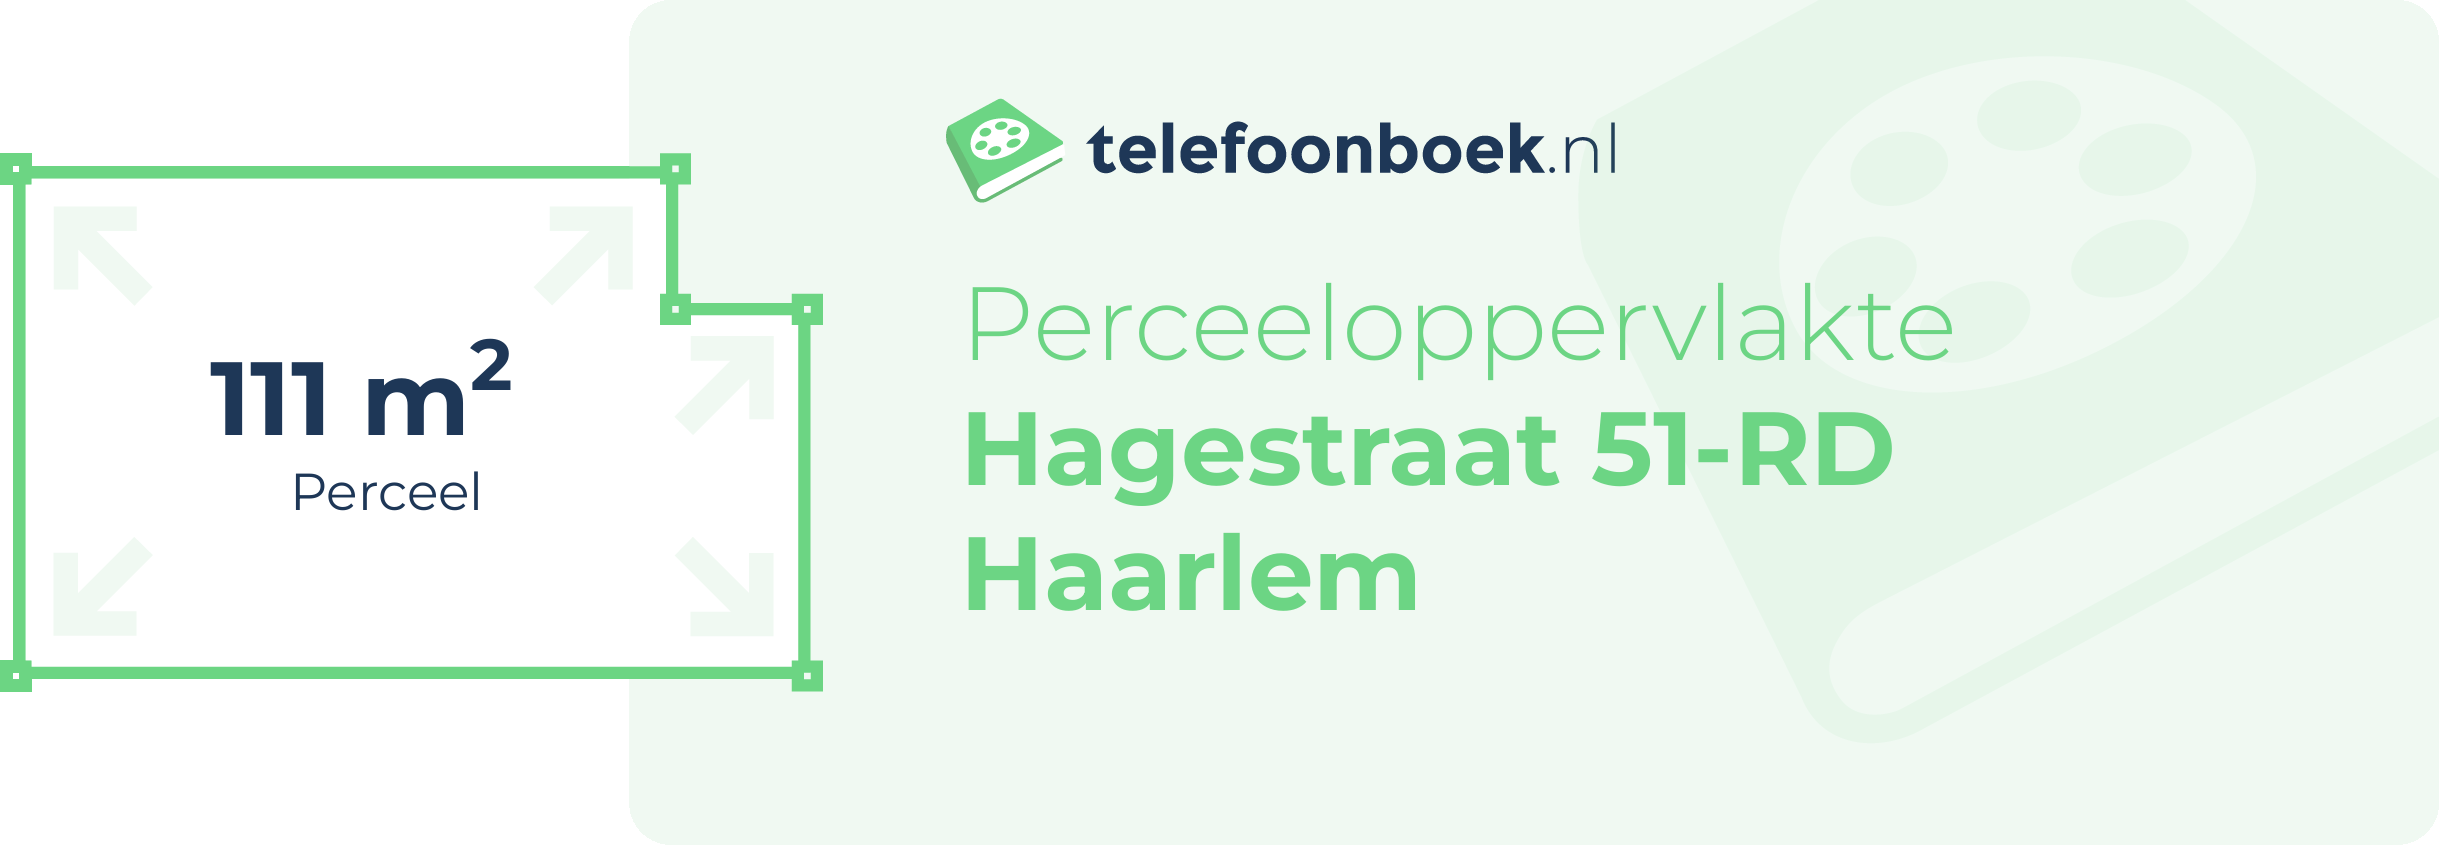 Perceeloppervlakte Hagestraat 51-RD Haarlem